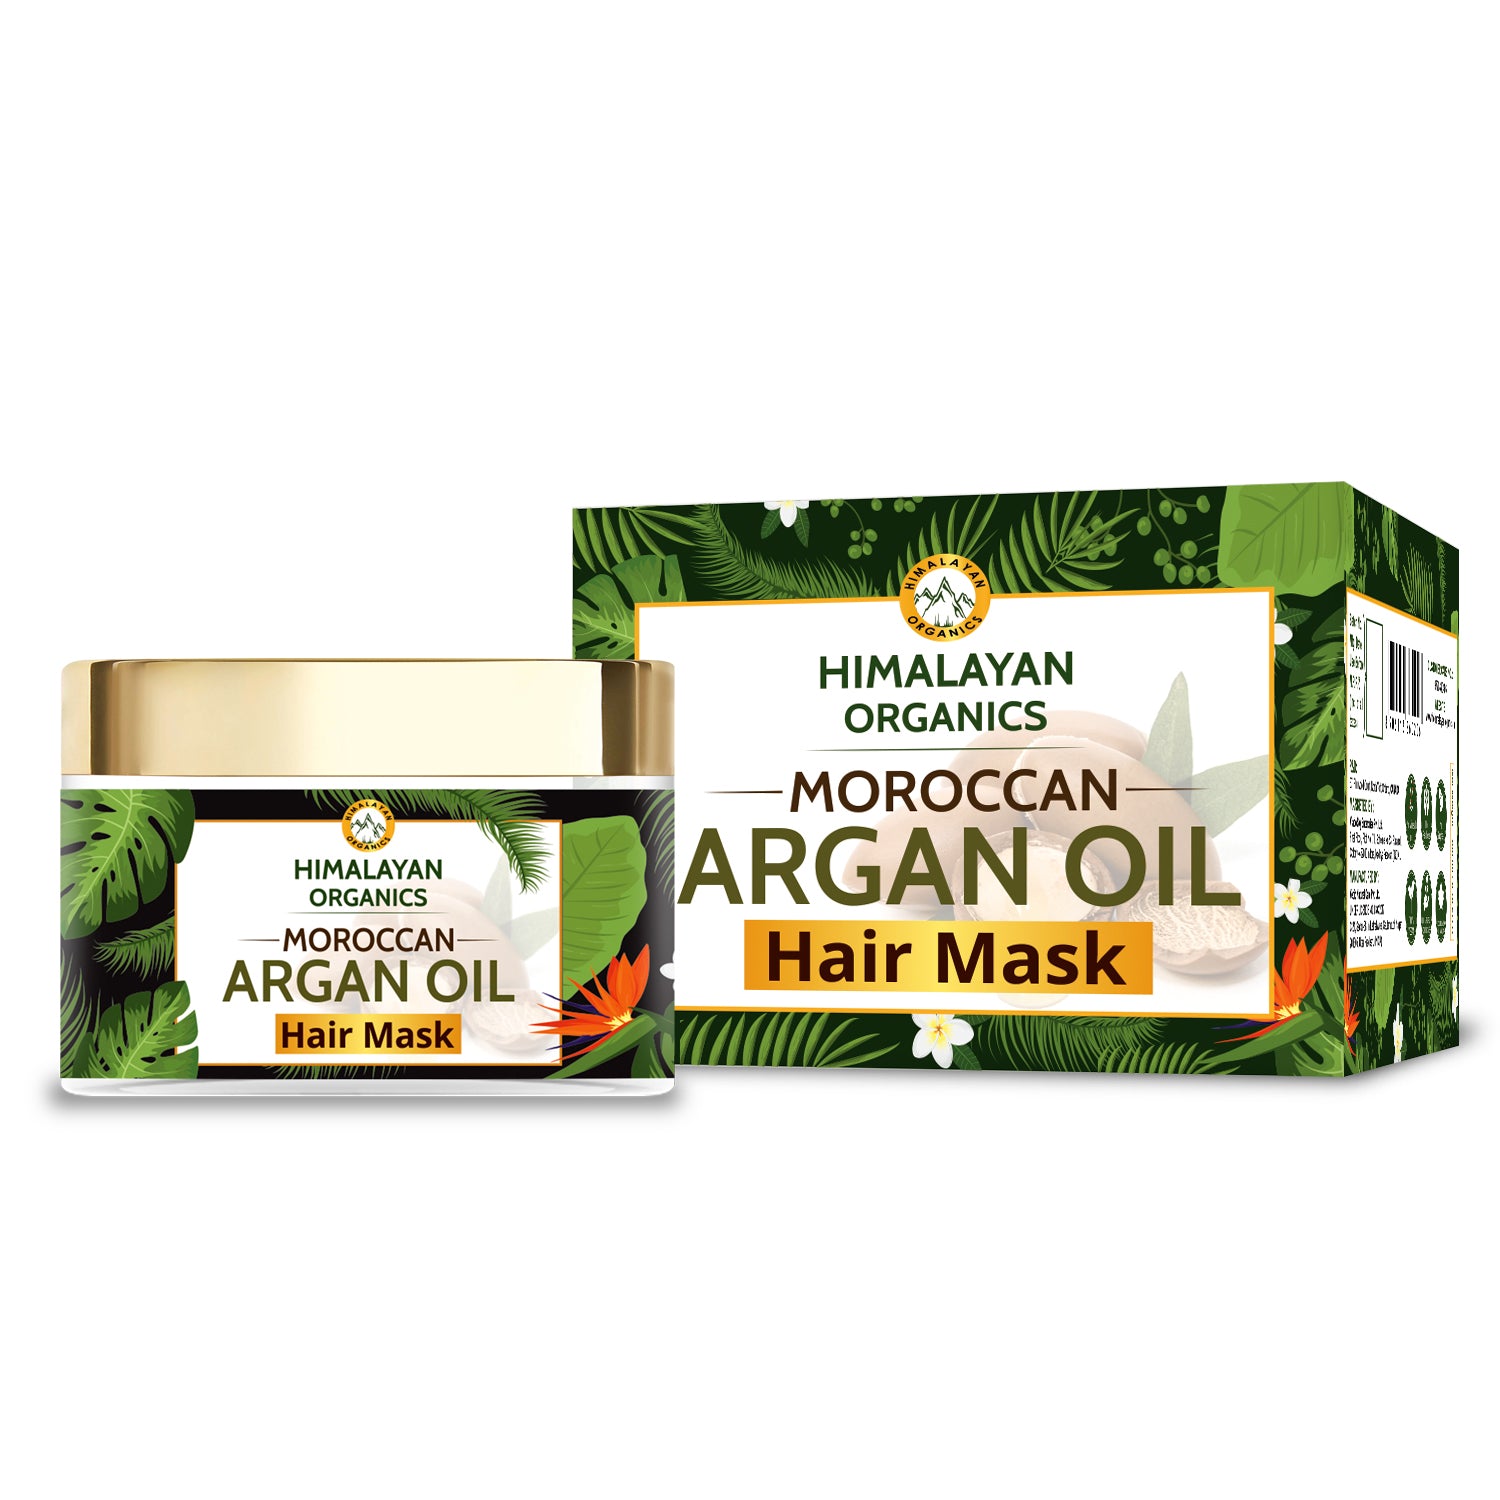 Himalayan Organics Moroccan Argan Oil Home Hair Mask 